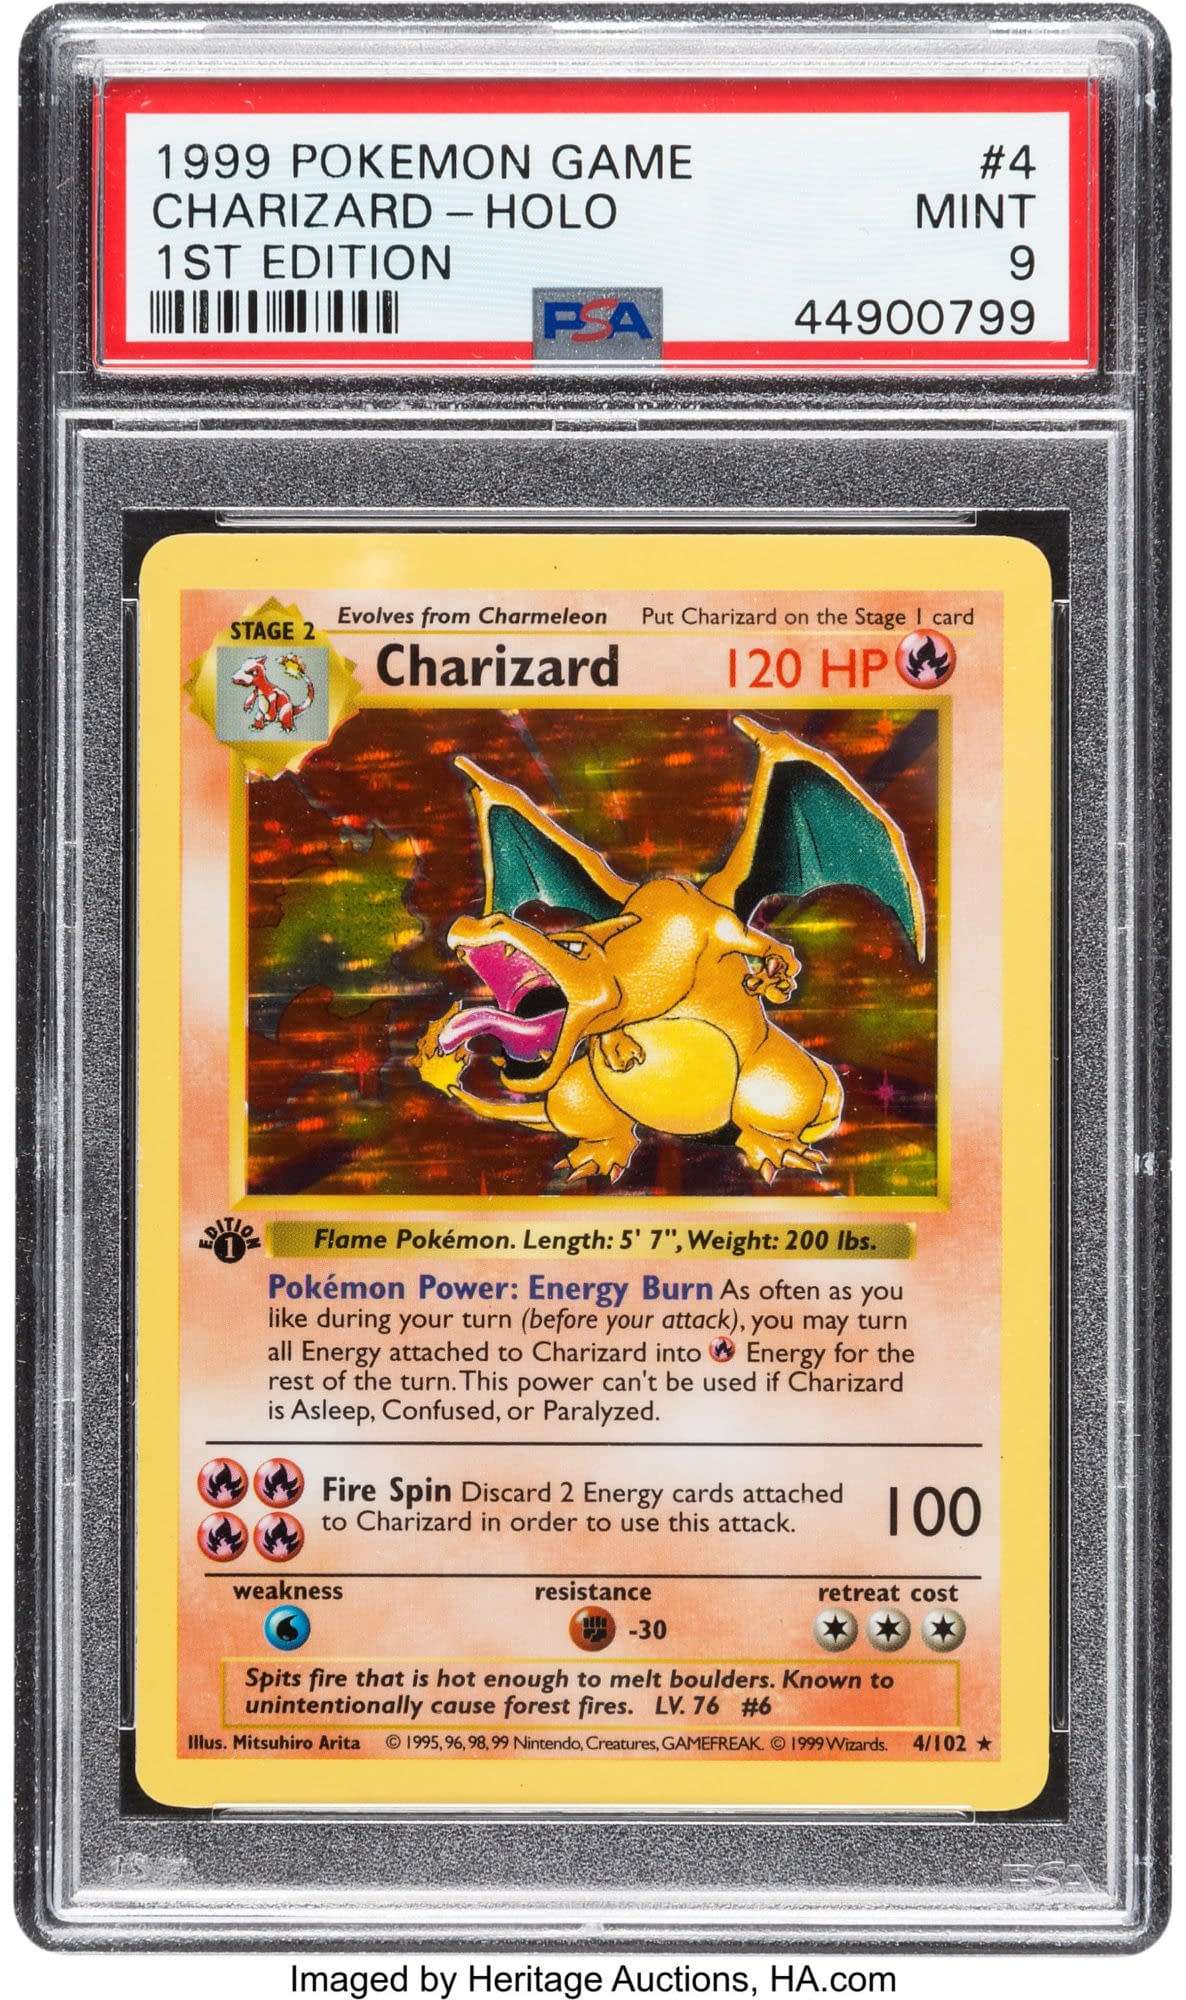 Rare First Edition Base Set Charizard Pokémon Card On Auction